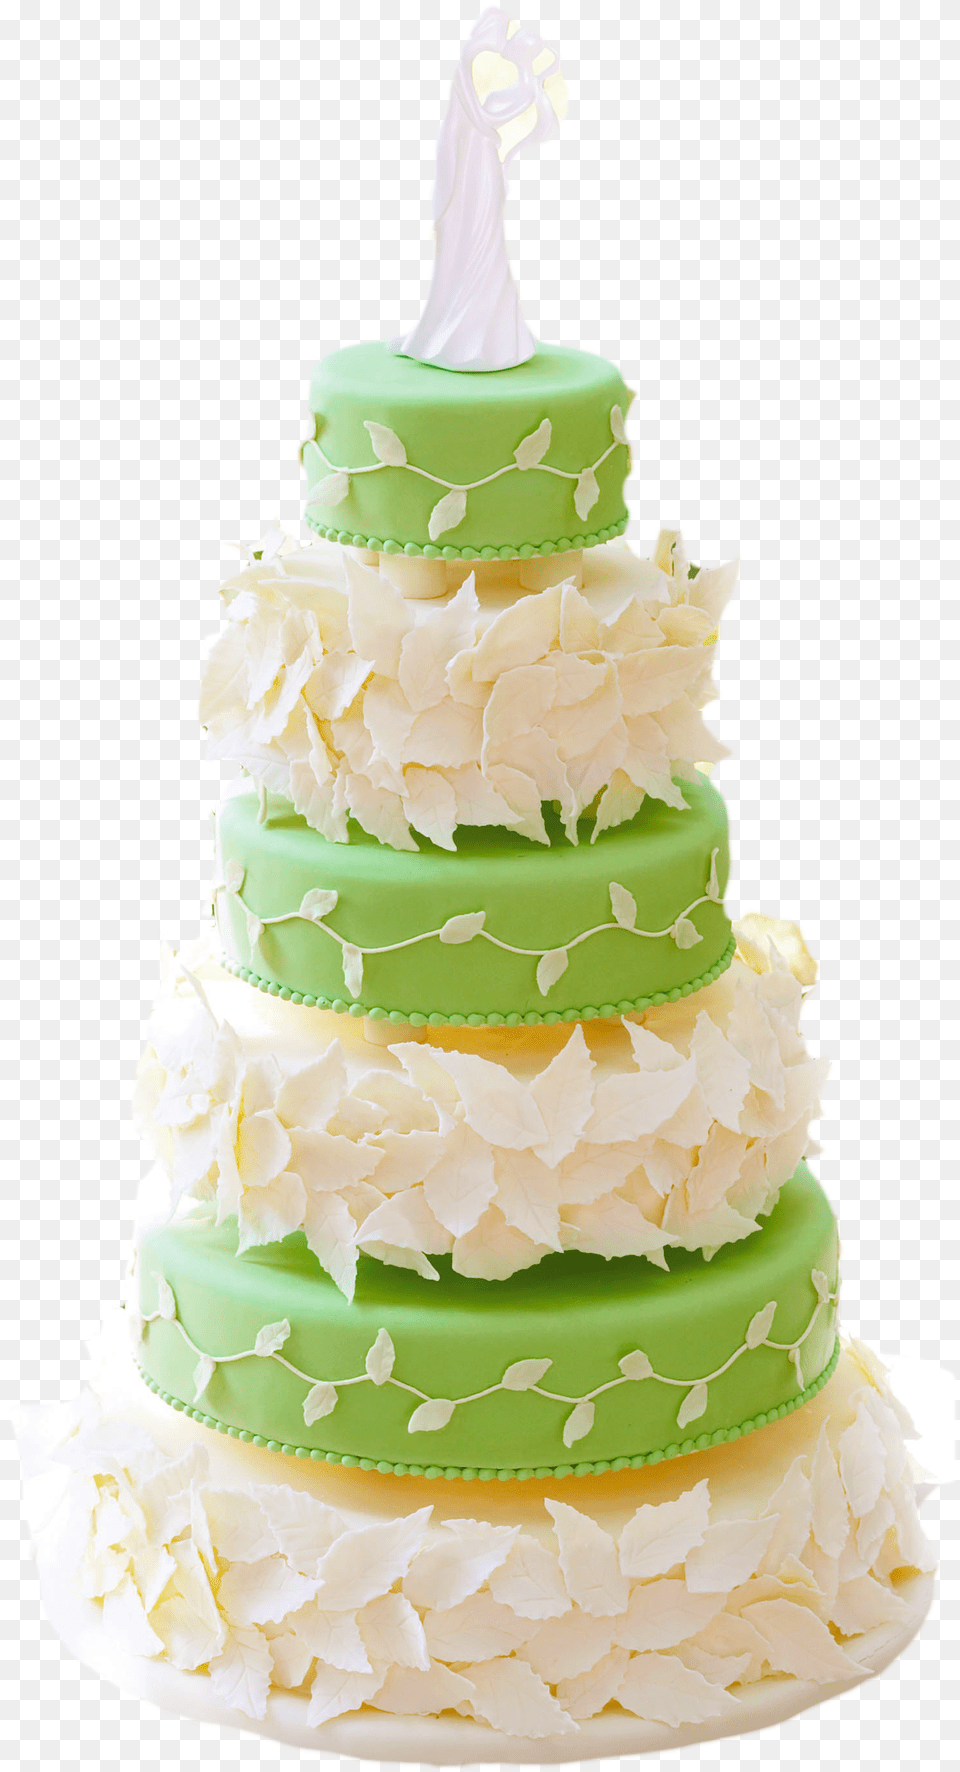 Cakes Birthday Cakes Green Birthday Cake Green Birthday Cake, Dessert, Food, Wedding, Wedding Cake Png